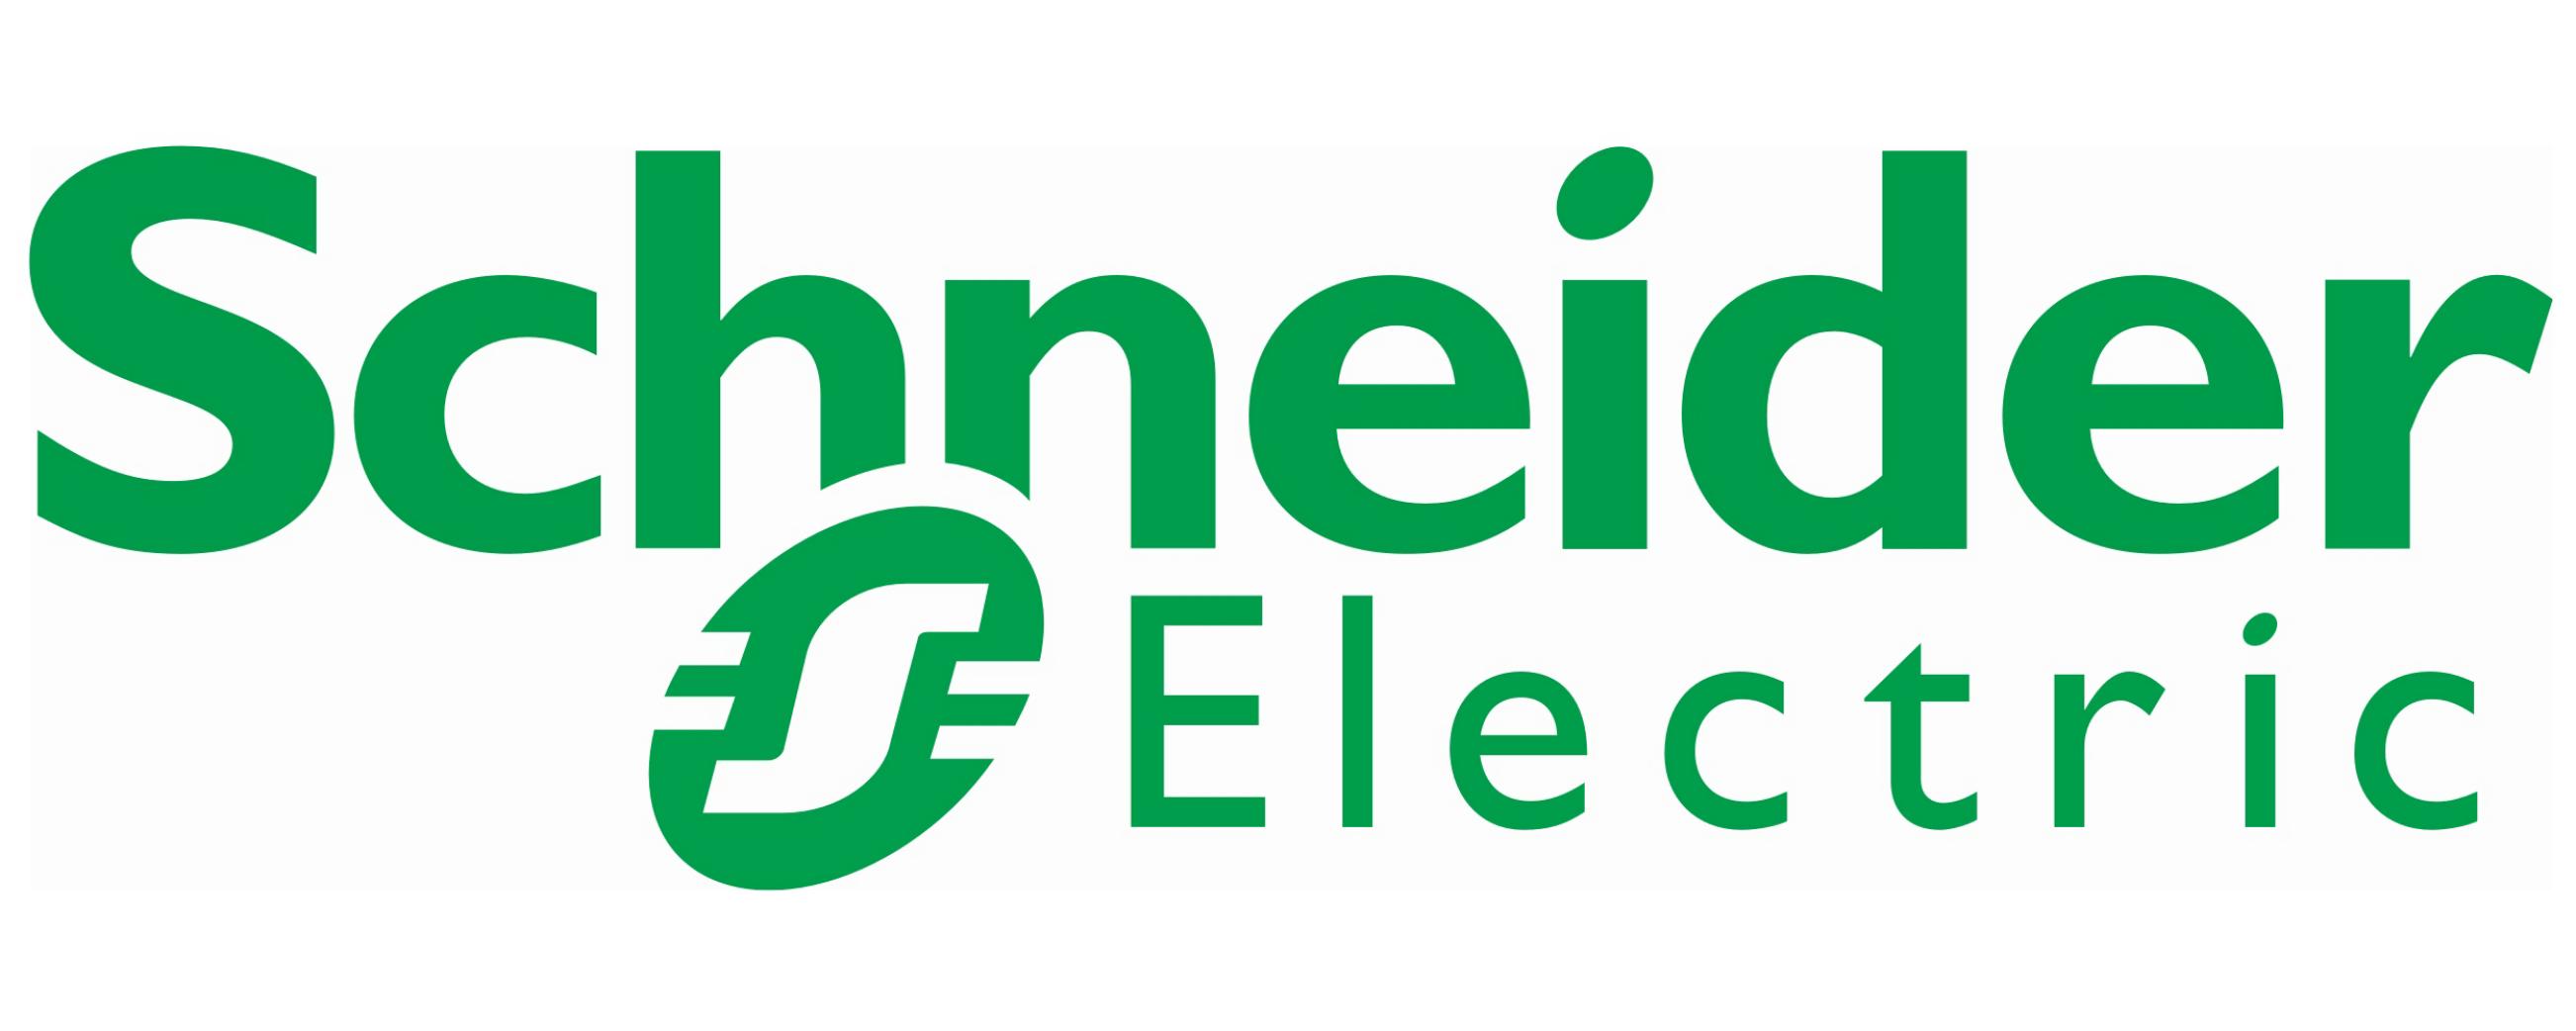 schneider_electric-logo.jpg